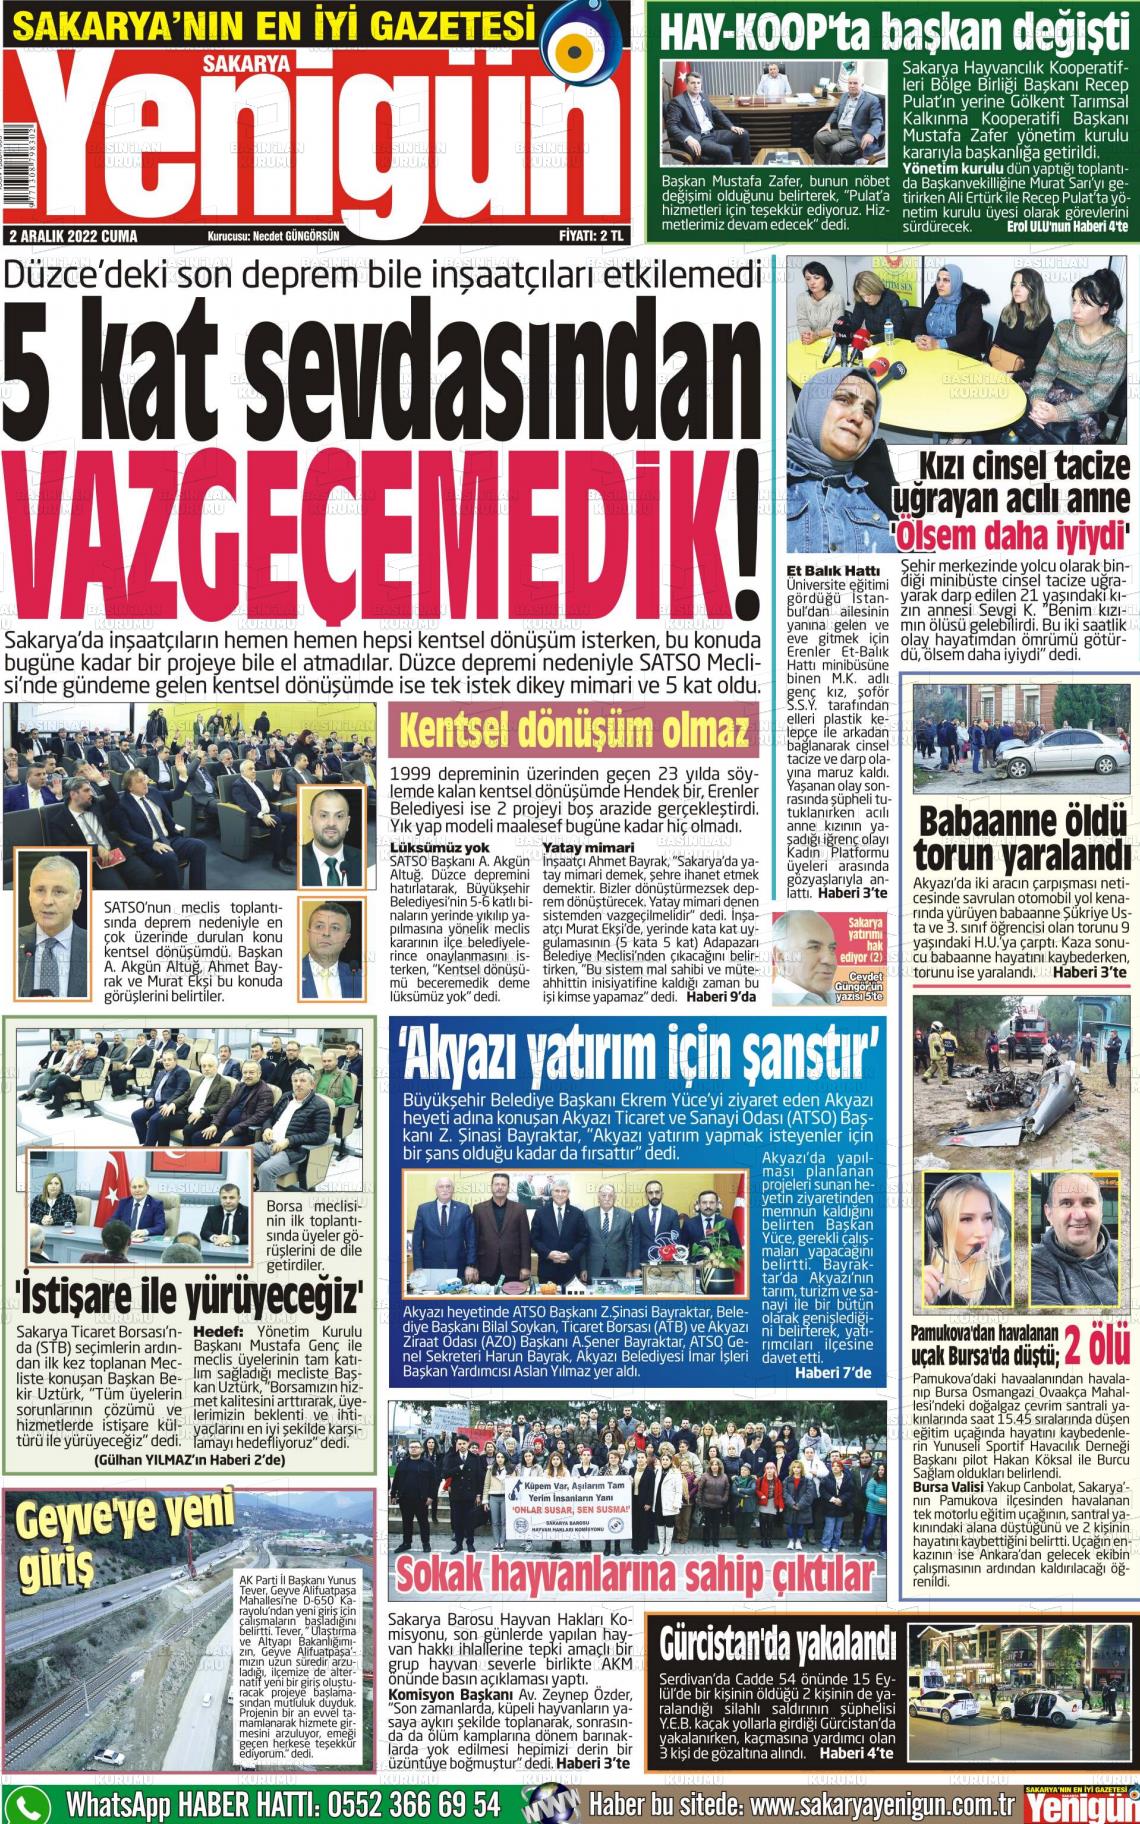 02 Aralık 2022 Sakarya Yenigün Gazete Manşeti